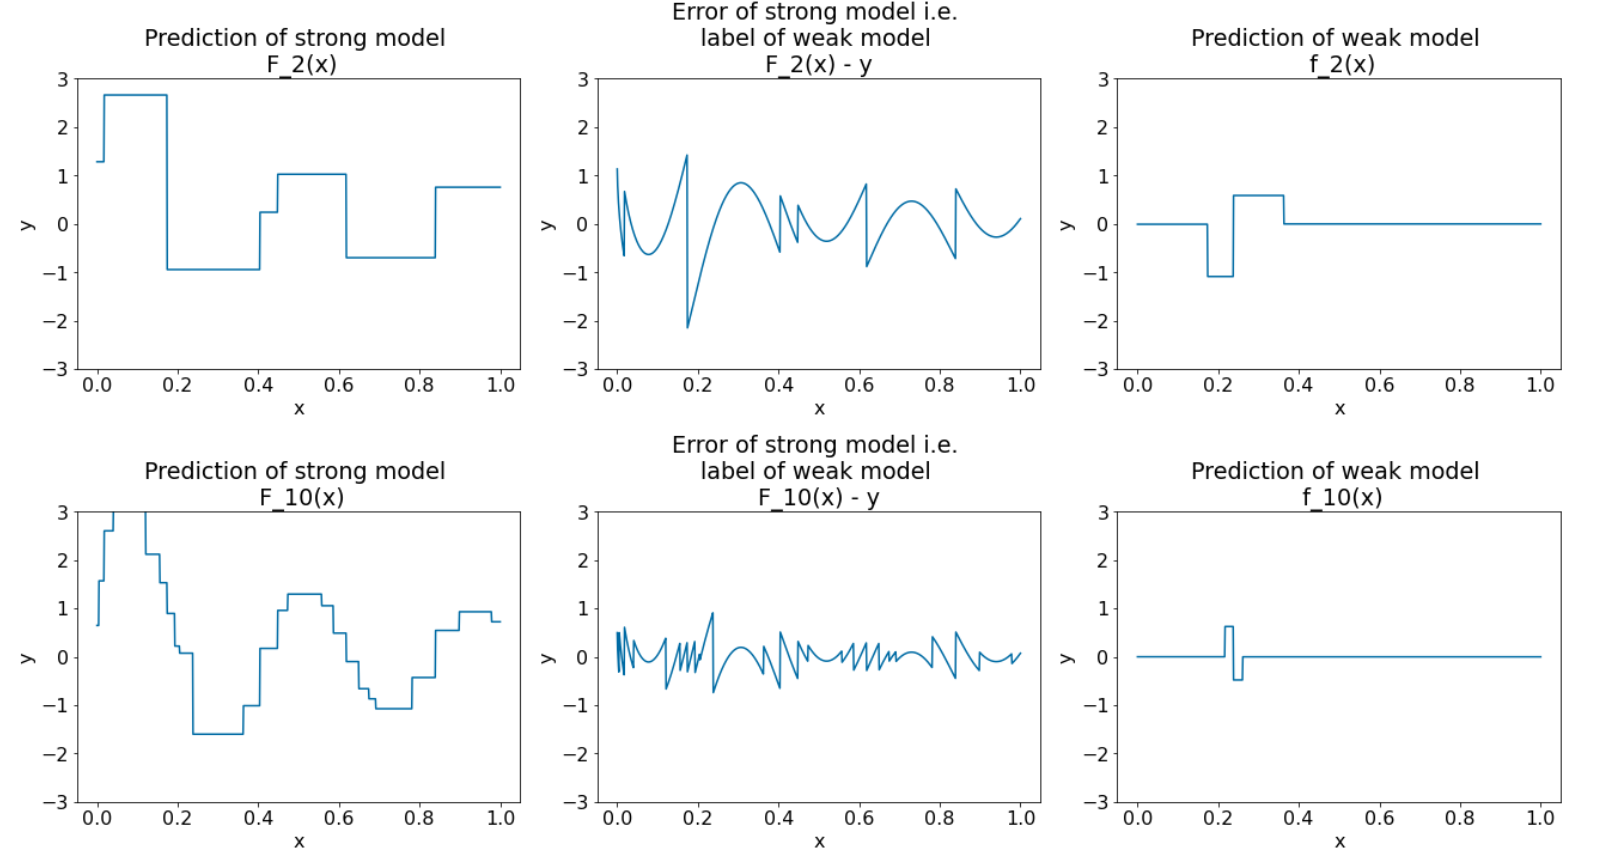 प्लॉट, धीरे दिखने वाले मज़बूत मॉडल को दिखाते हैं
जबकि कमज़ोर मॉडल का पूर्वानुमान धीरे-धीरे, कमज़ोर होता जाता है.